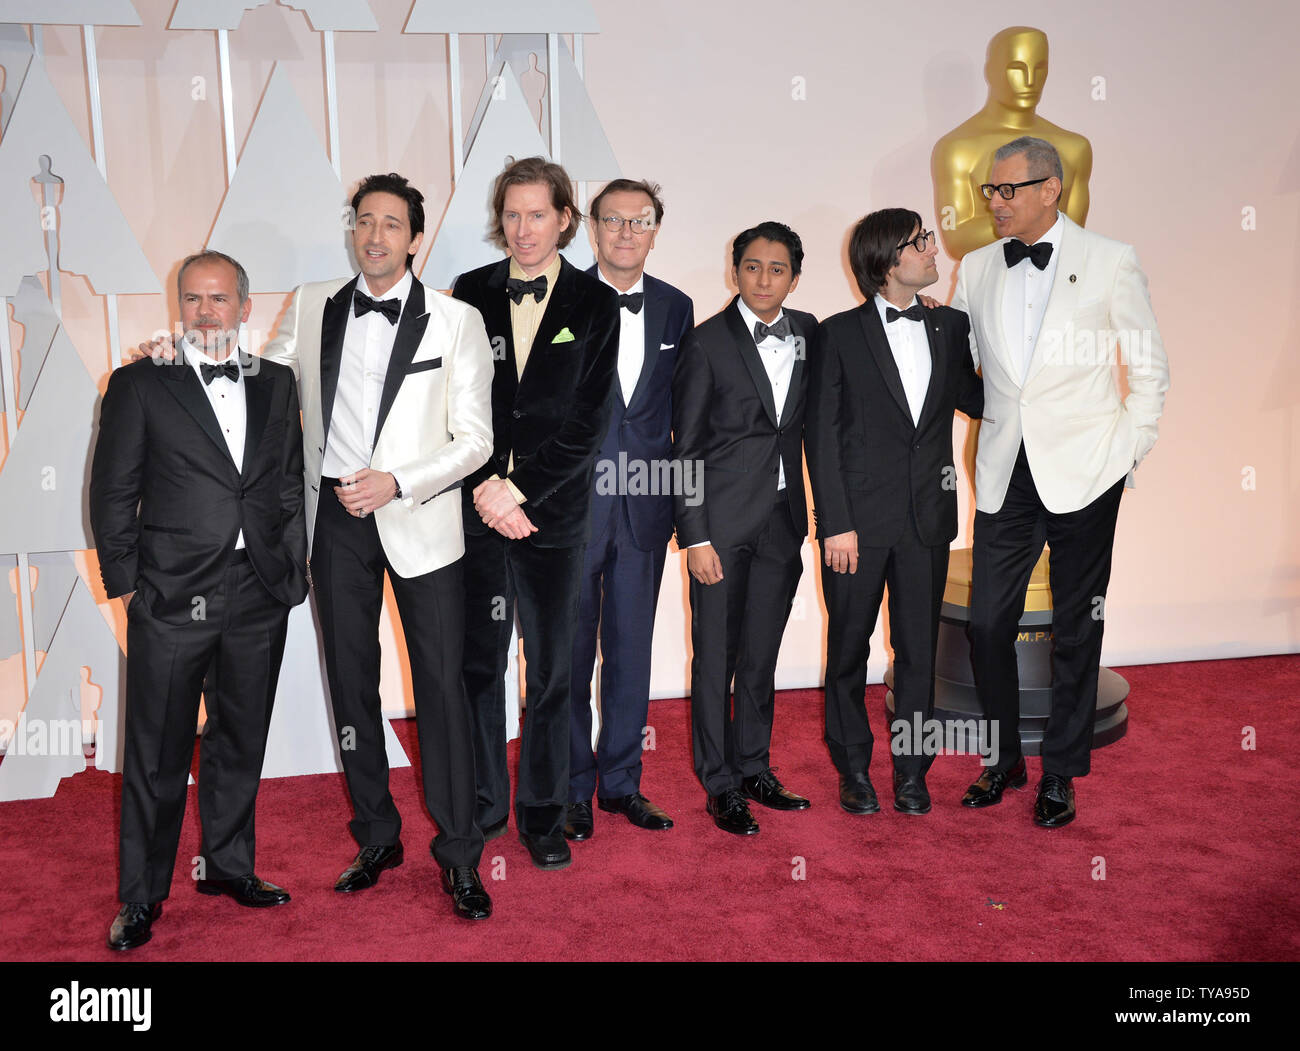 Il cast del Grand Hotel di Budapest arriva sul tappeto rosso al 87th Academy Awards a Hollywood & Highland Center di Los Angeles il 22 febbraio 2015. Foto di Kevin Dietsch/UPI Foto Stock